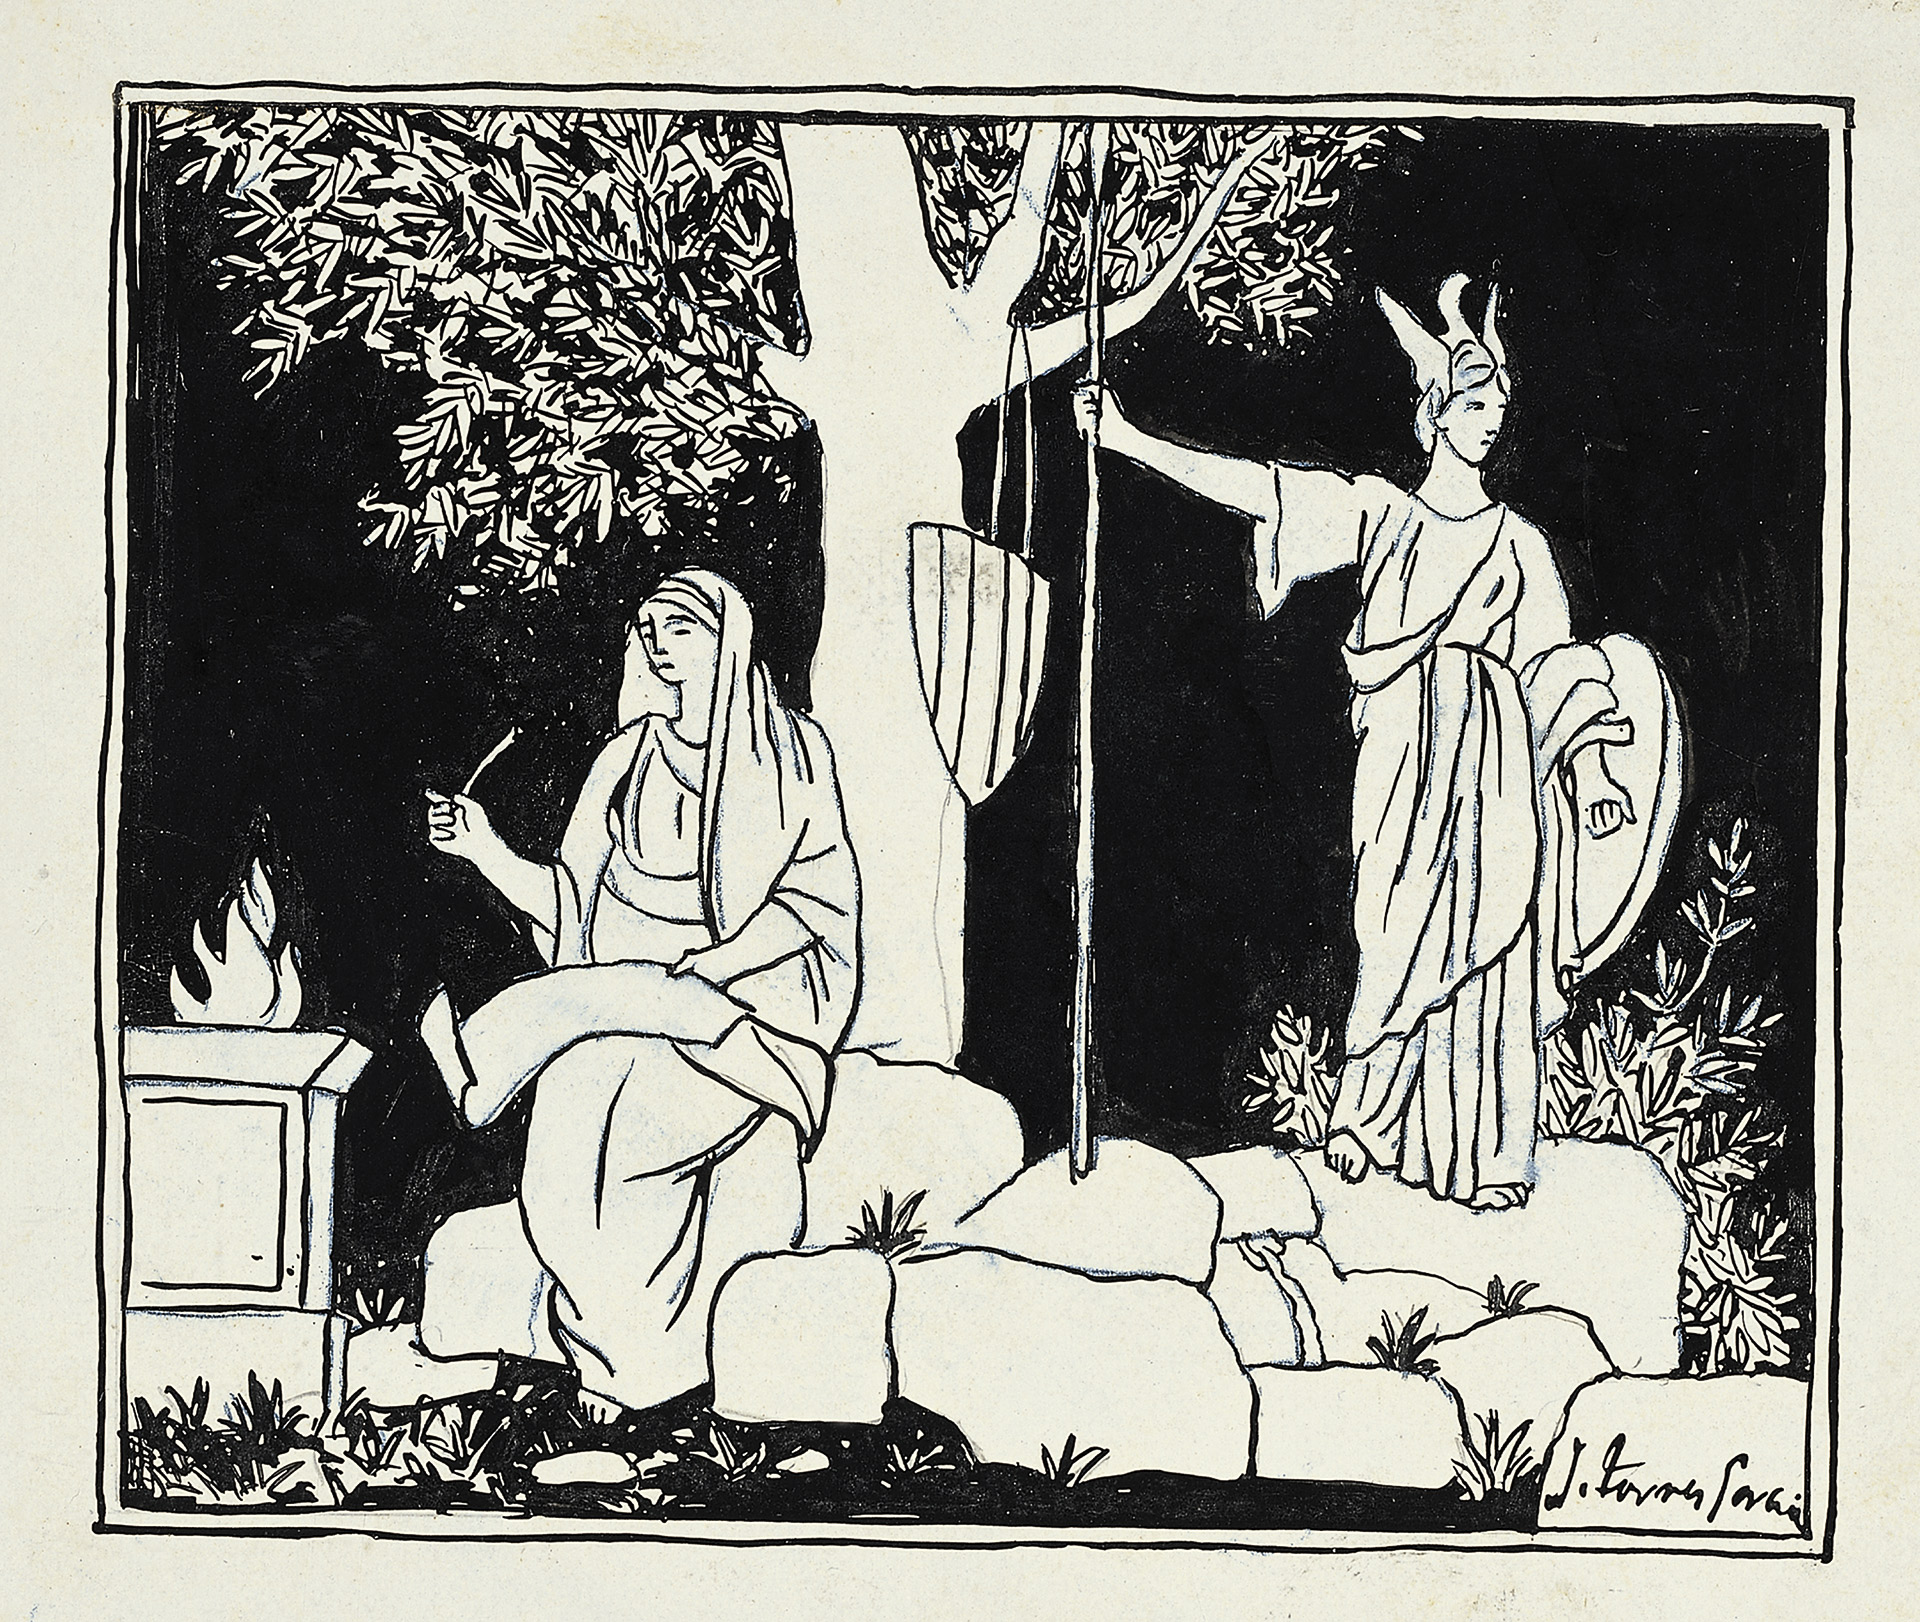 Dibujo para "La Catalunya eterna" (1912), de Joaquín Torres García